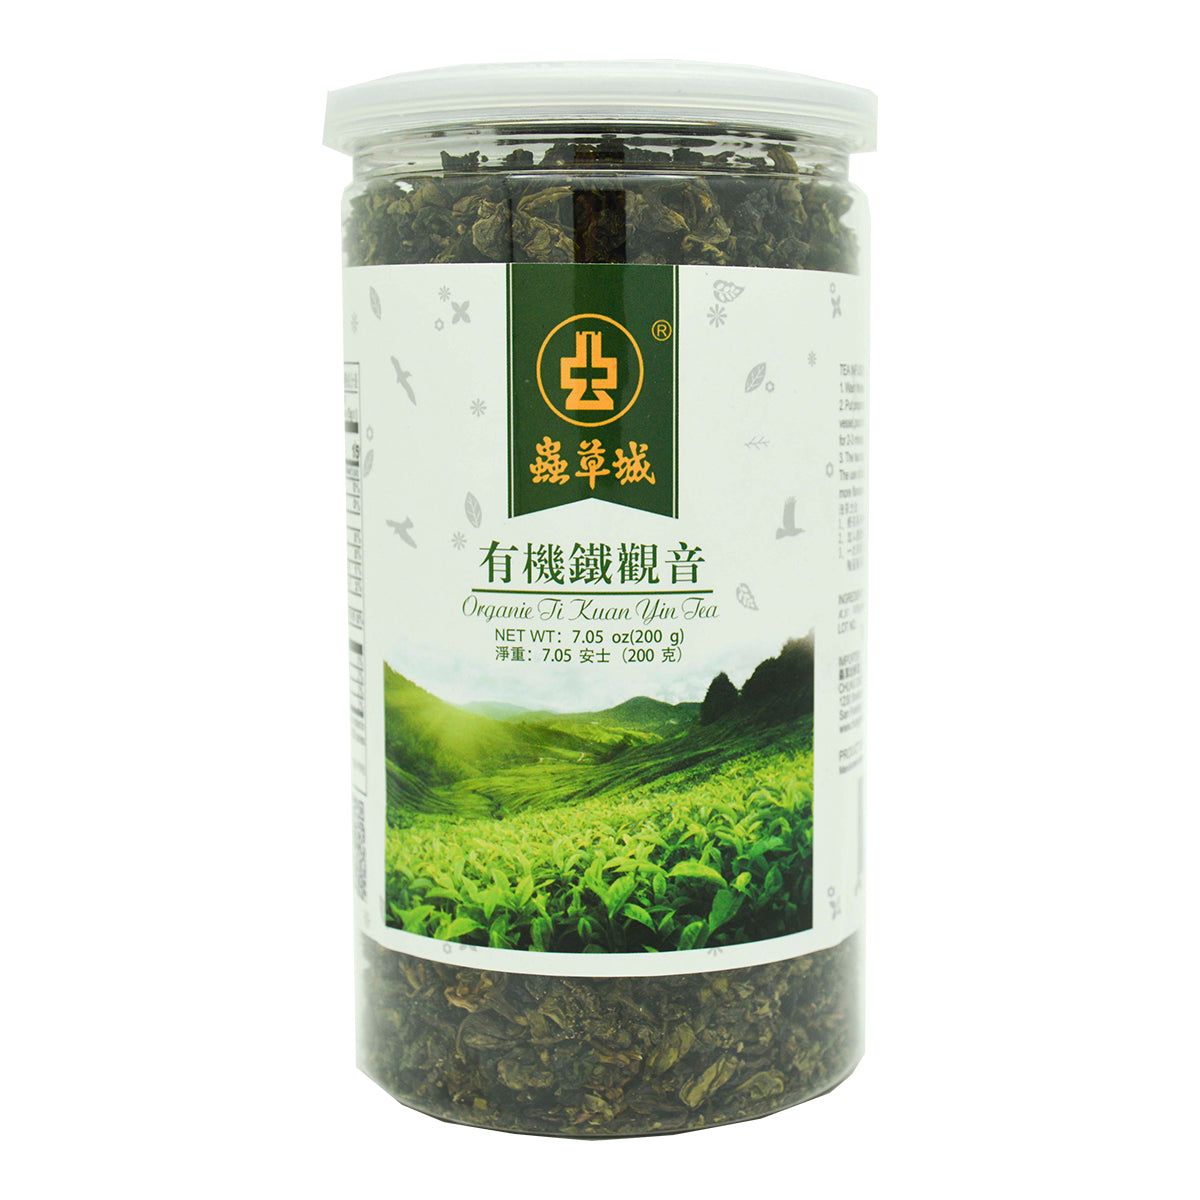 Organic Ti Kuan Yin Tea 200g